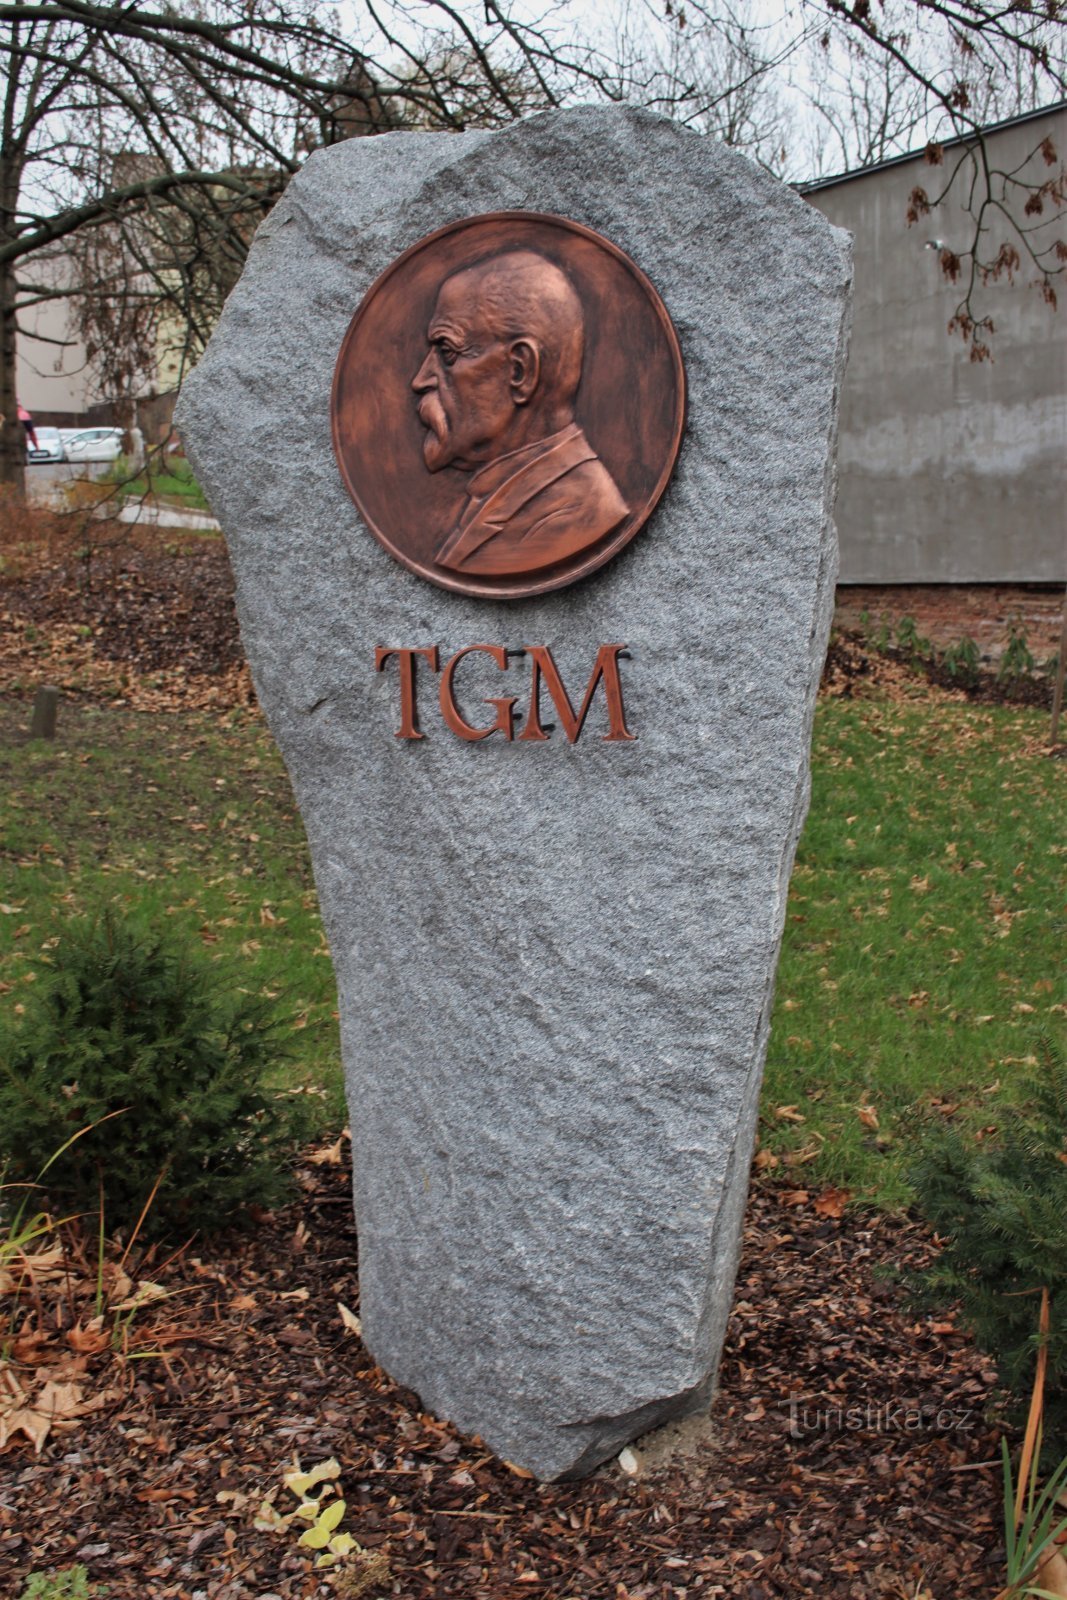 Ústí nad Orlicí - relevo com um retrato de TGM